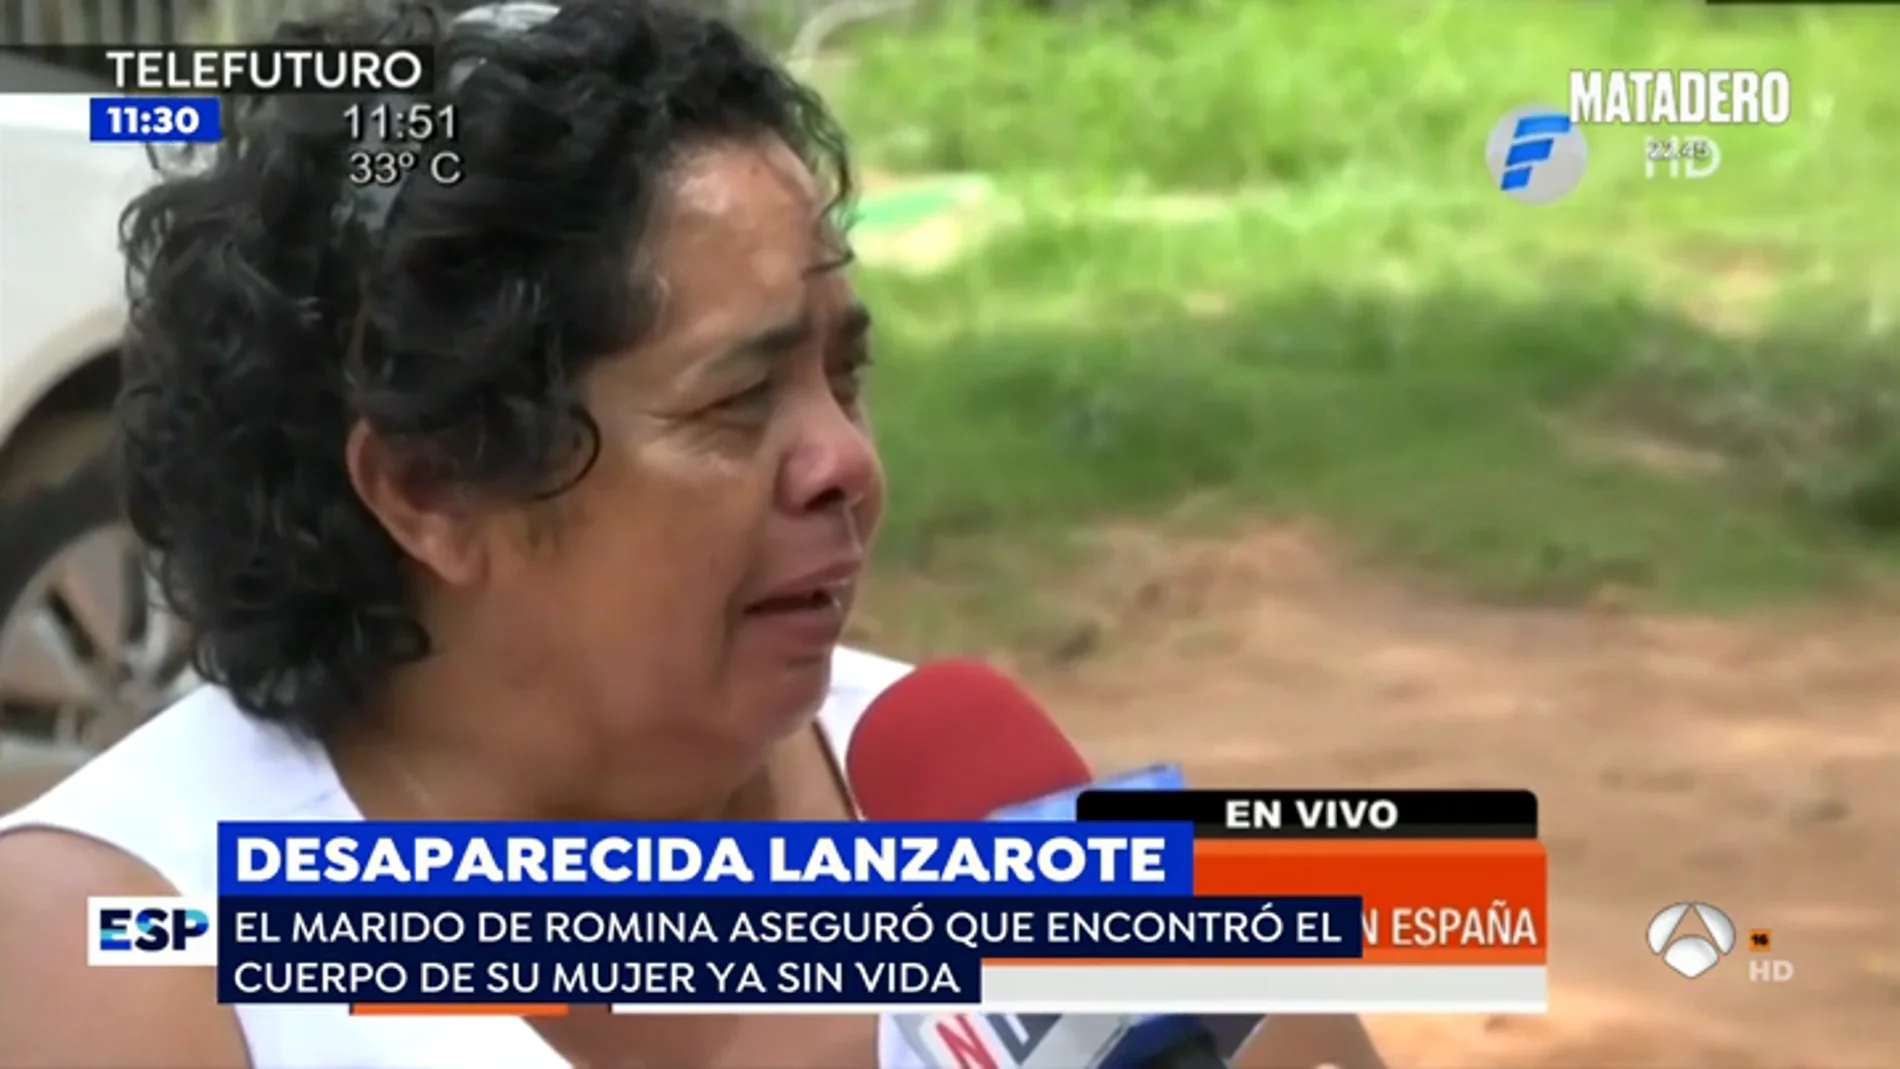 La madre de Romina, la mujer desparecida en Lanzarote: "No pierdo la esperanza de que mi hija me llame"